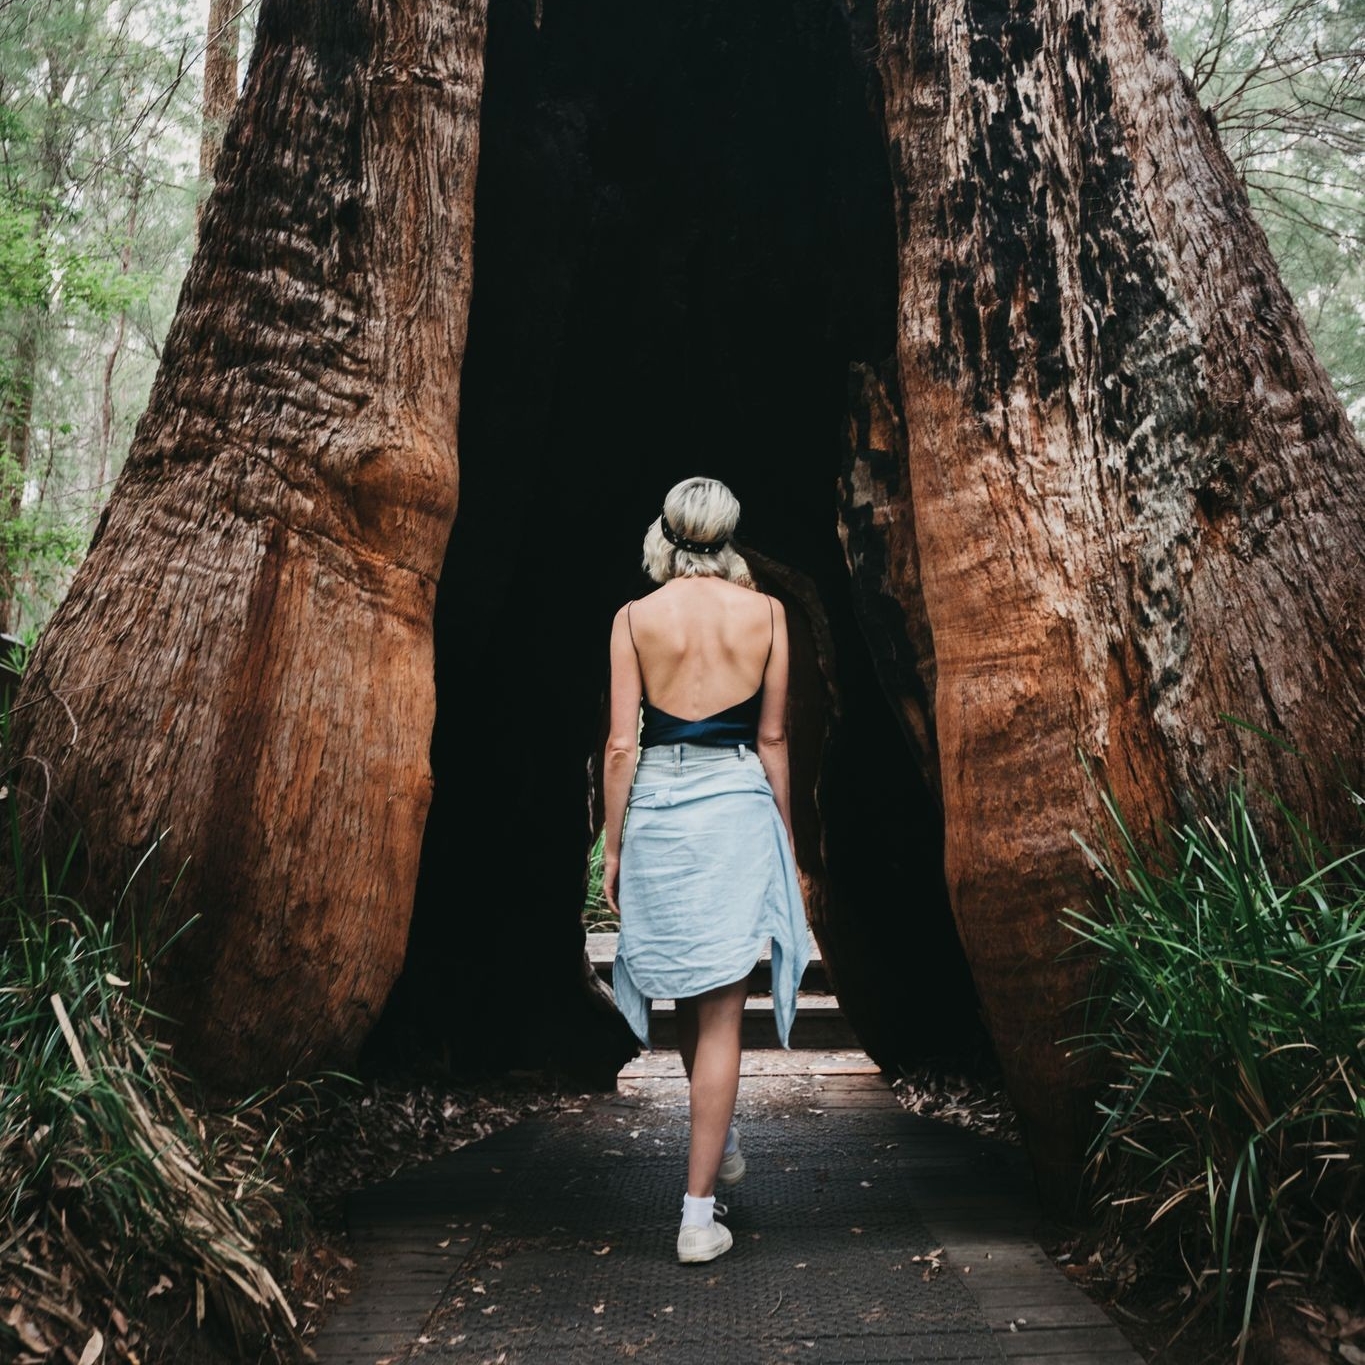 徒步穿越古树的女孩 © 澳大利亚西南部旅游局版权所有